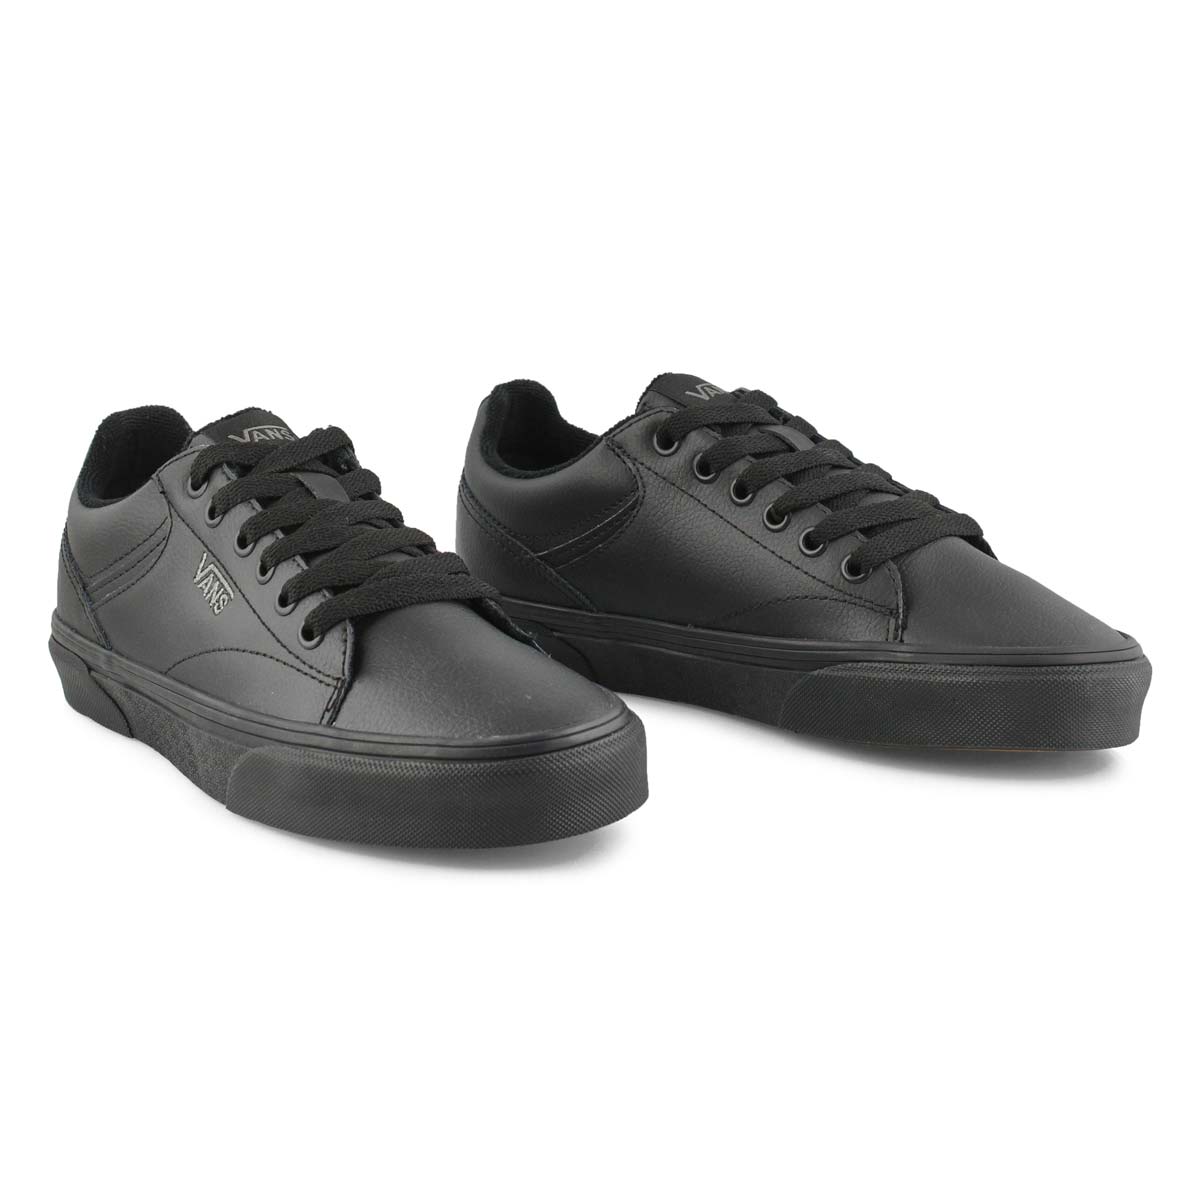 Vans Women's Seldan Sneaker - Black/White | SoftMoc.com